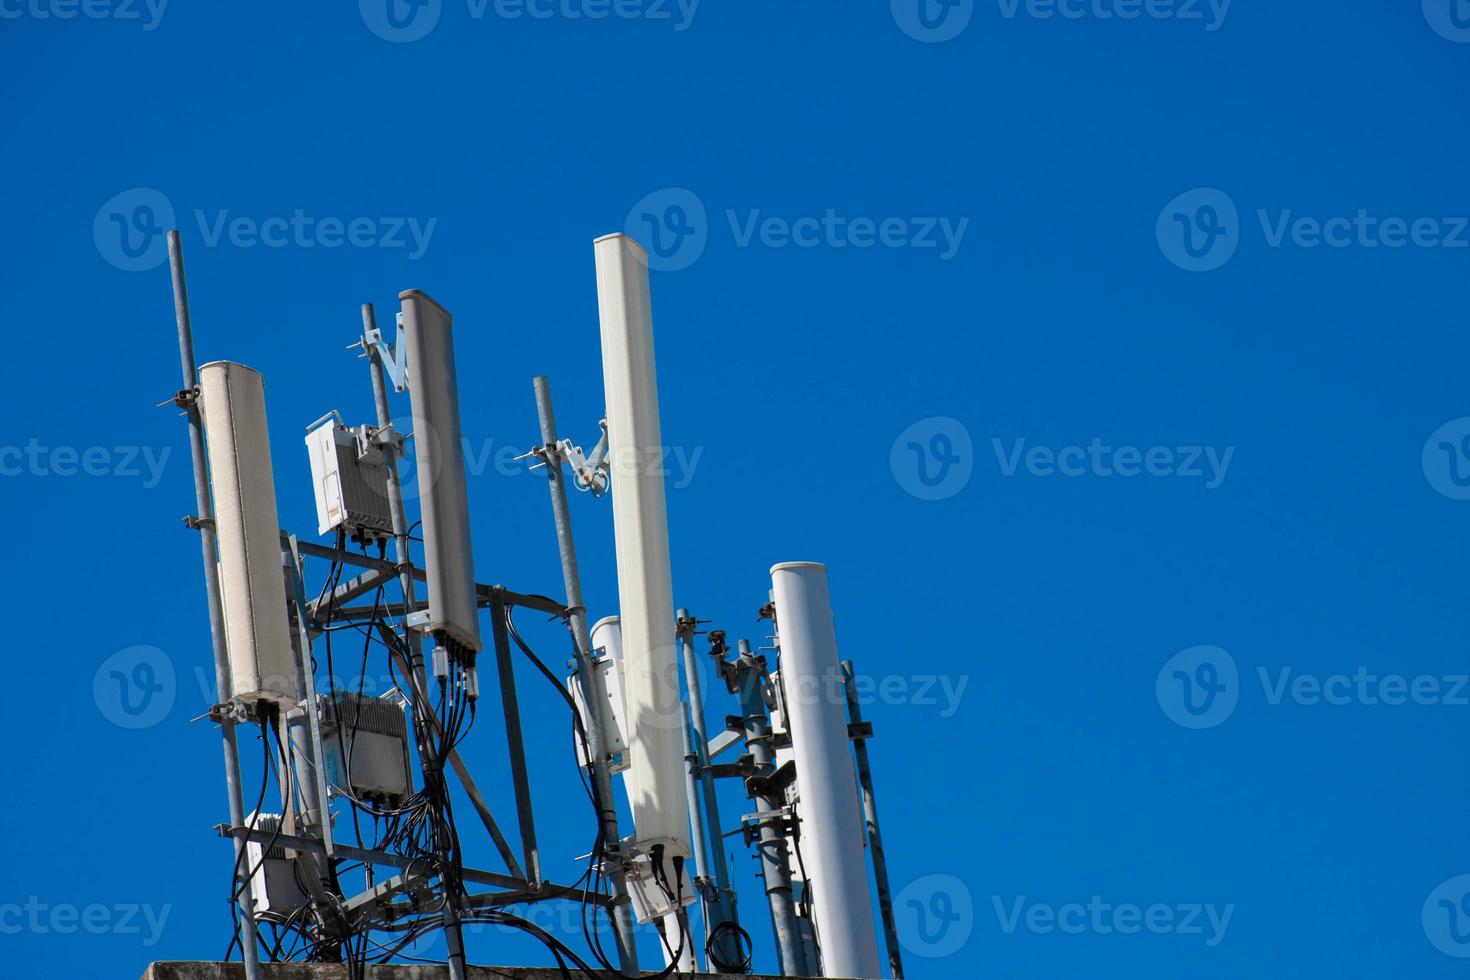 Fernmeldeturm von 4g und 5g Mobilfunk. Kommunikation über Antennenübertragung. Handy-Signal-Basisstation. foto